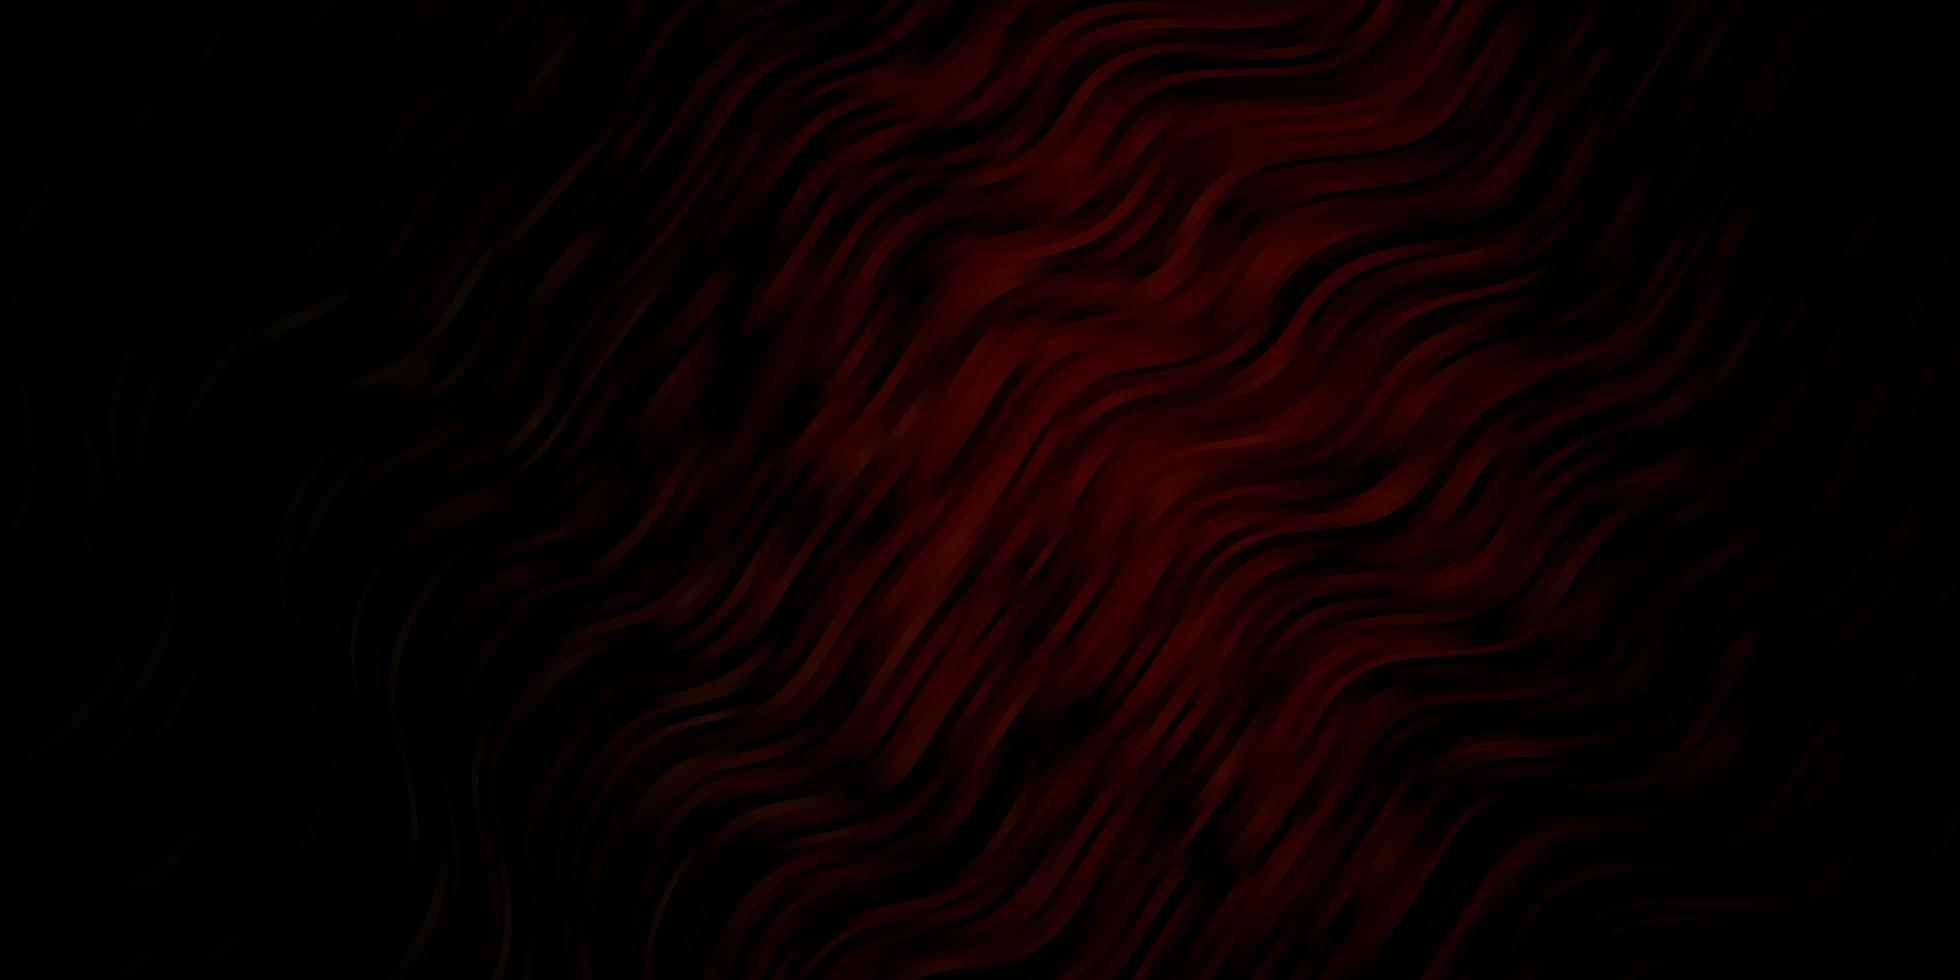 Fondo de vector rojo oscuro con líneas dobladas. Ilustración de estilo abstracto con degradado curvo. plantilla para su diseño de interfaz de usuario.